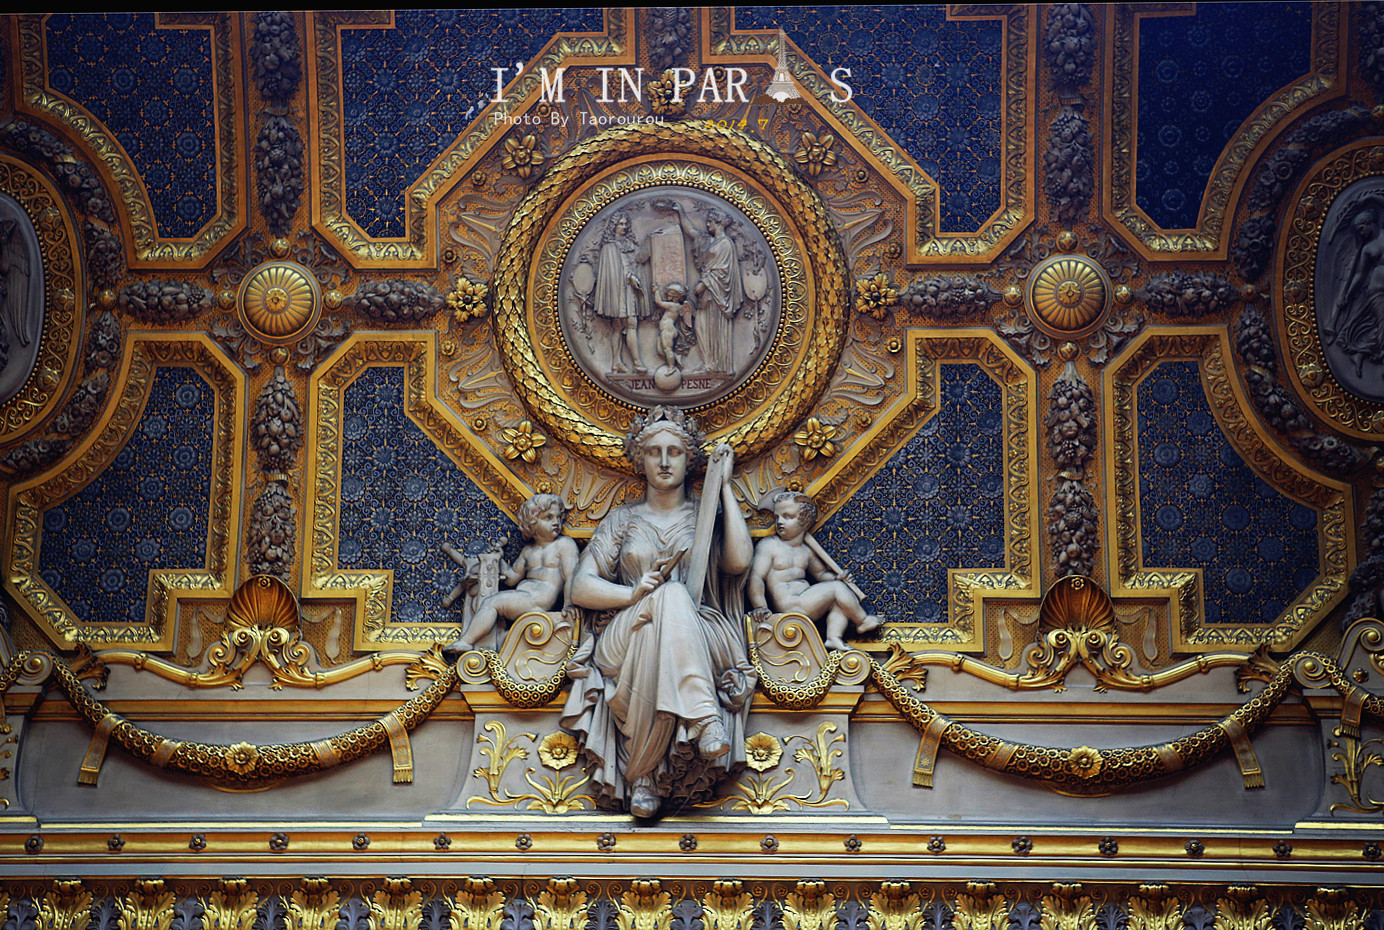 据统计,卢浮宫宫殿共收藏有40多万件来自世界各国的艺术珍品.